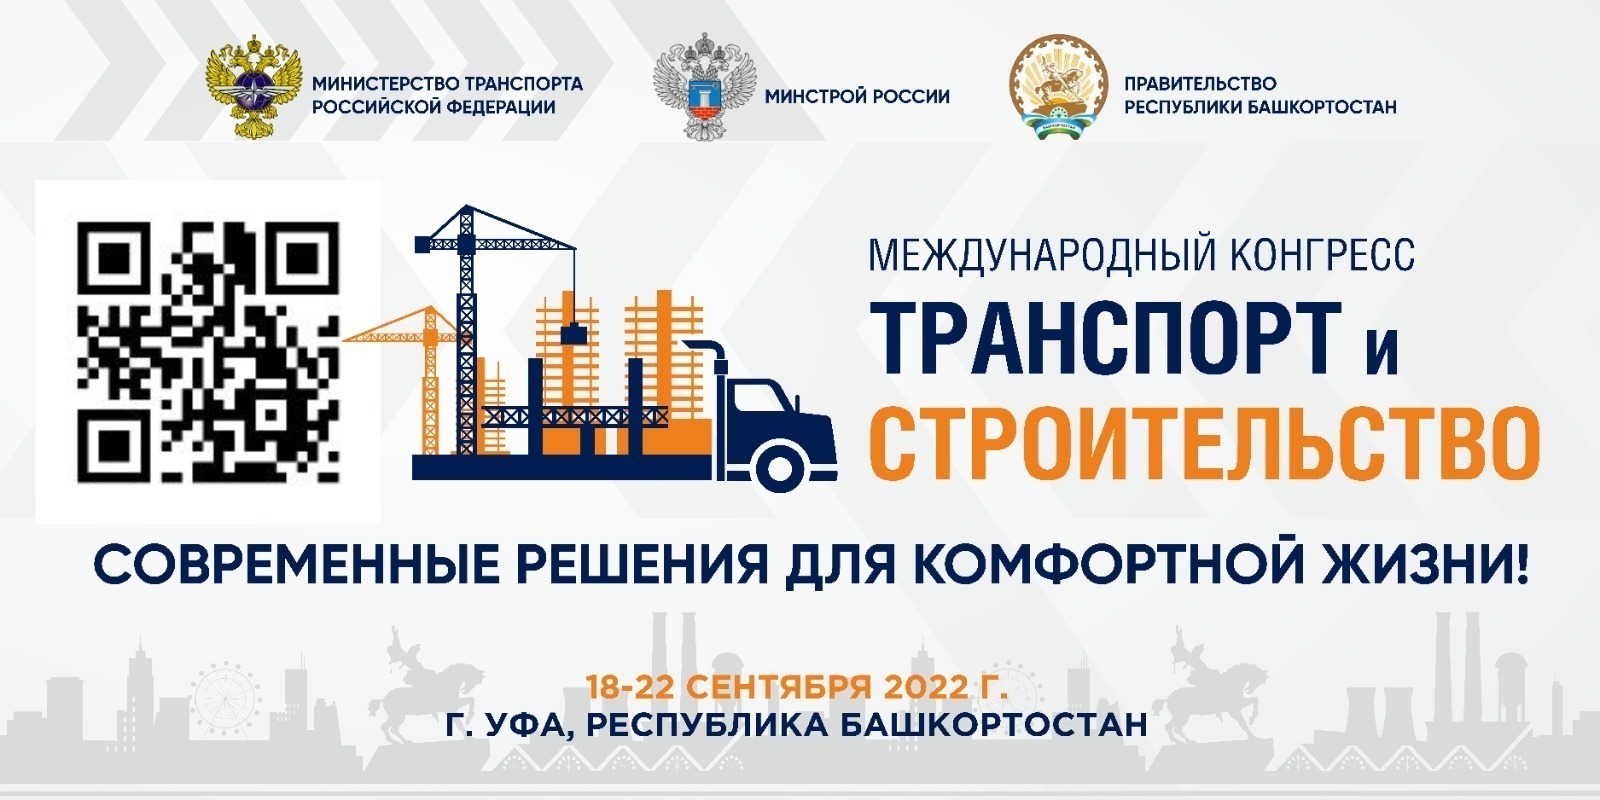 На Международном конгрессе «Транспорт и строительство» пройдет саммит крупнейших застройщиков России